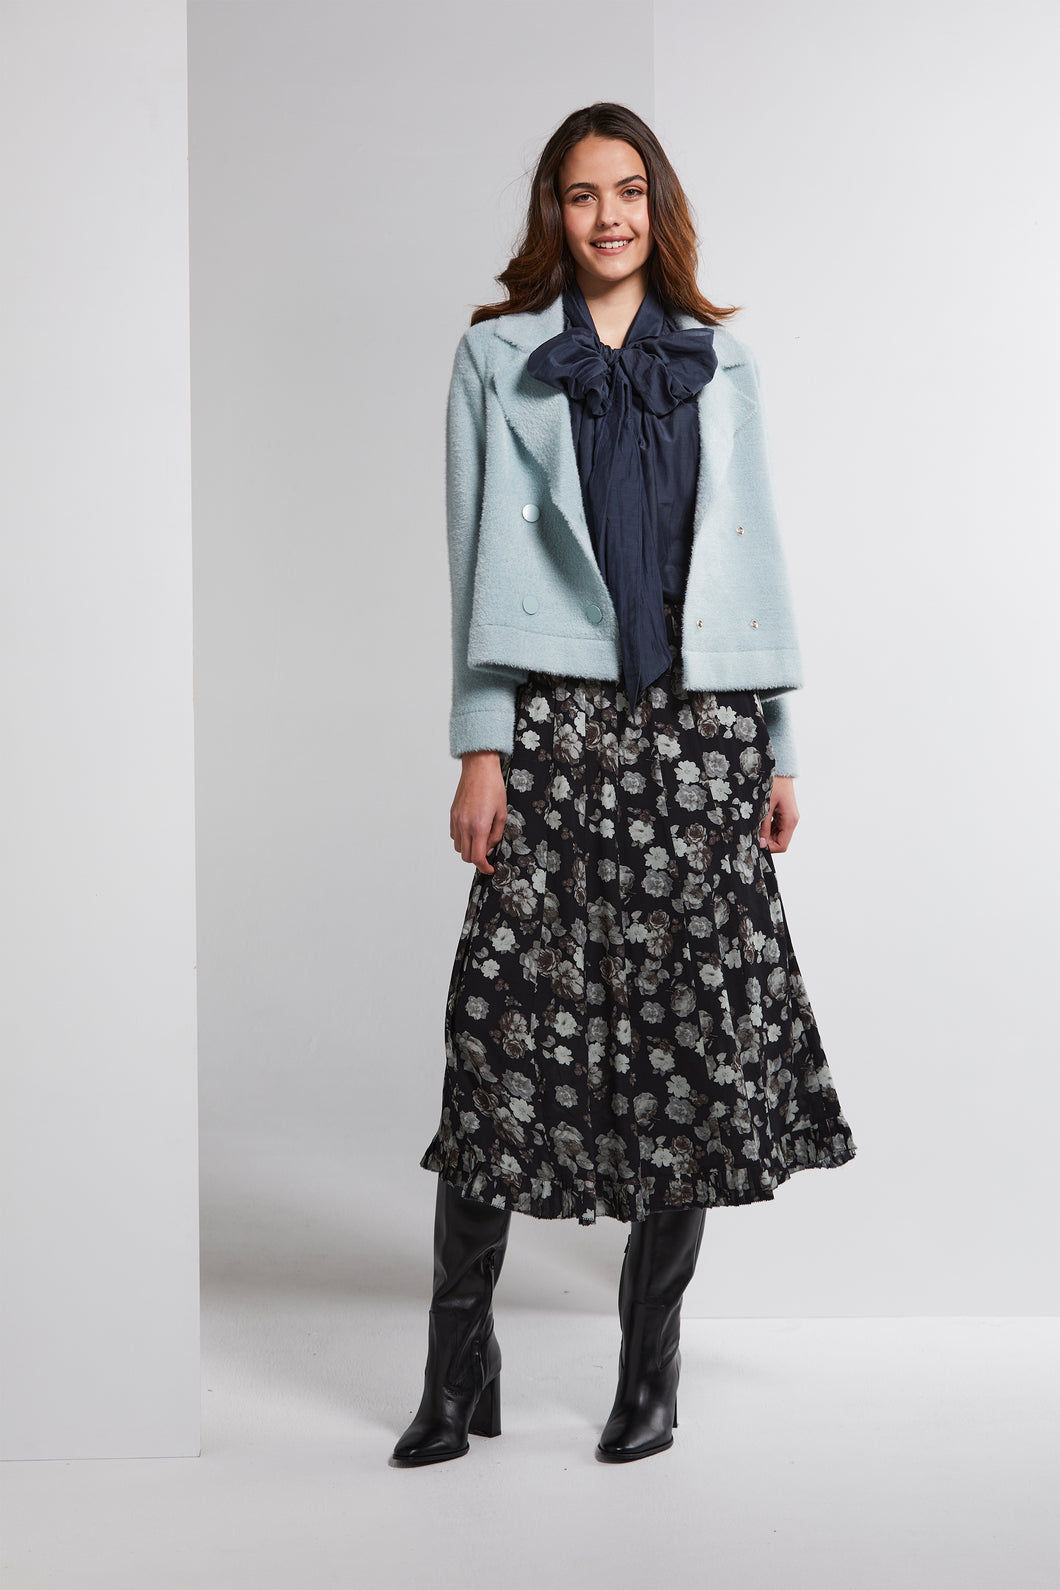 LANIA Stirling Skirt.   3576